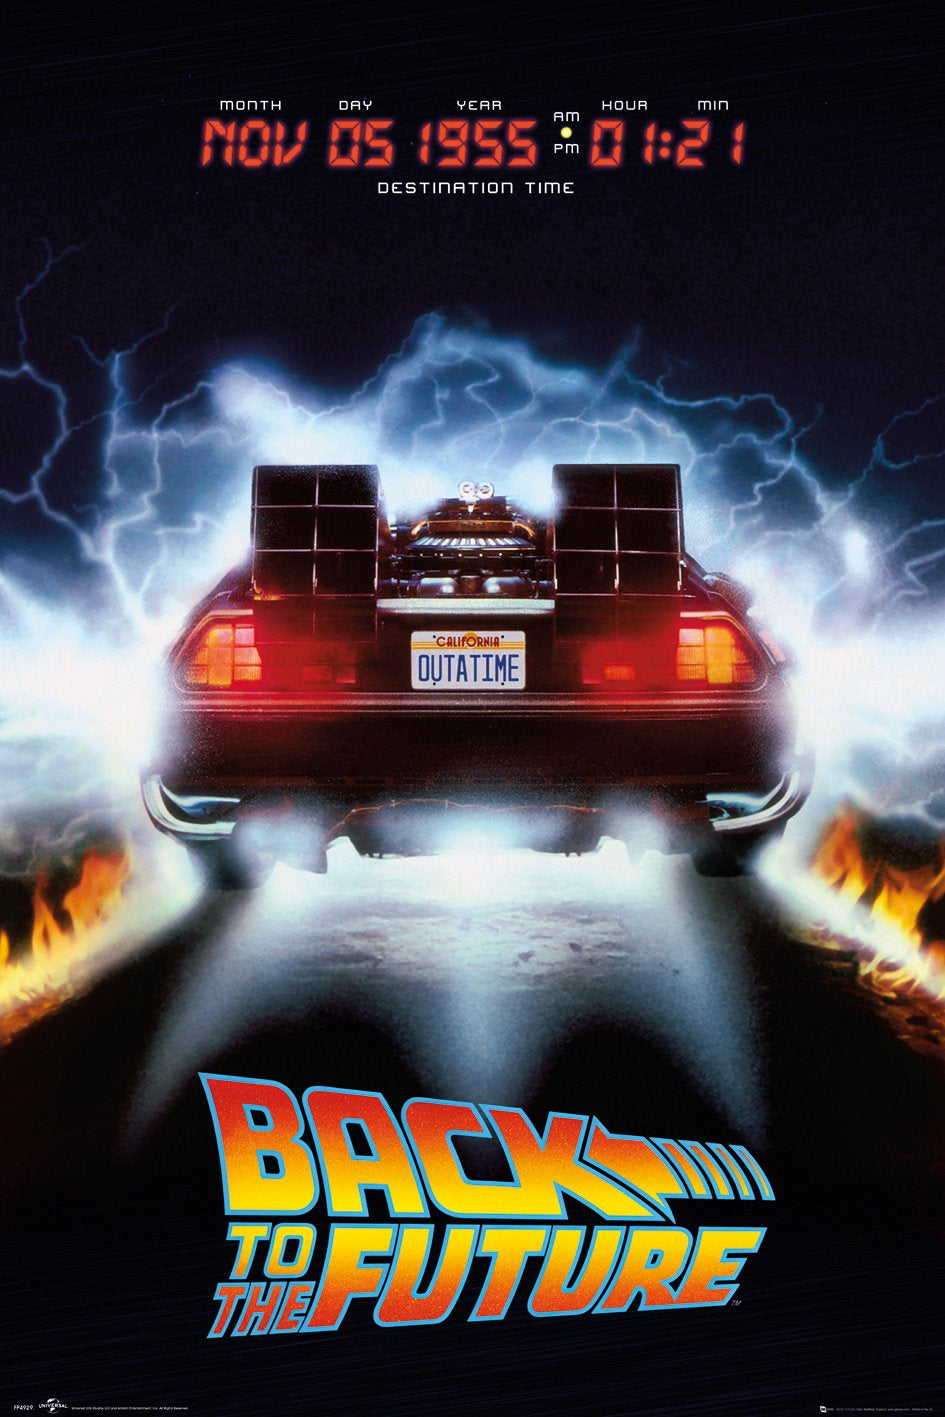 Back To The Future (Delorean) Poster